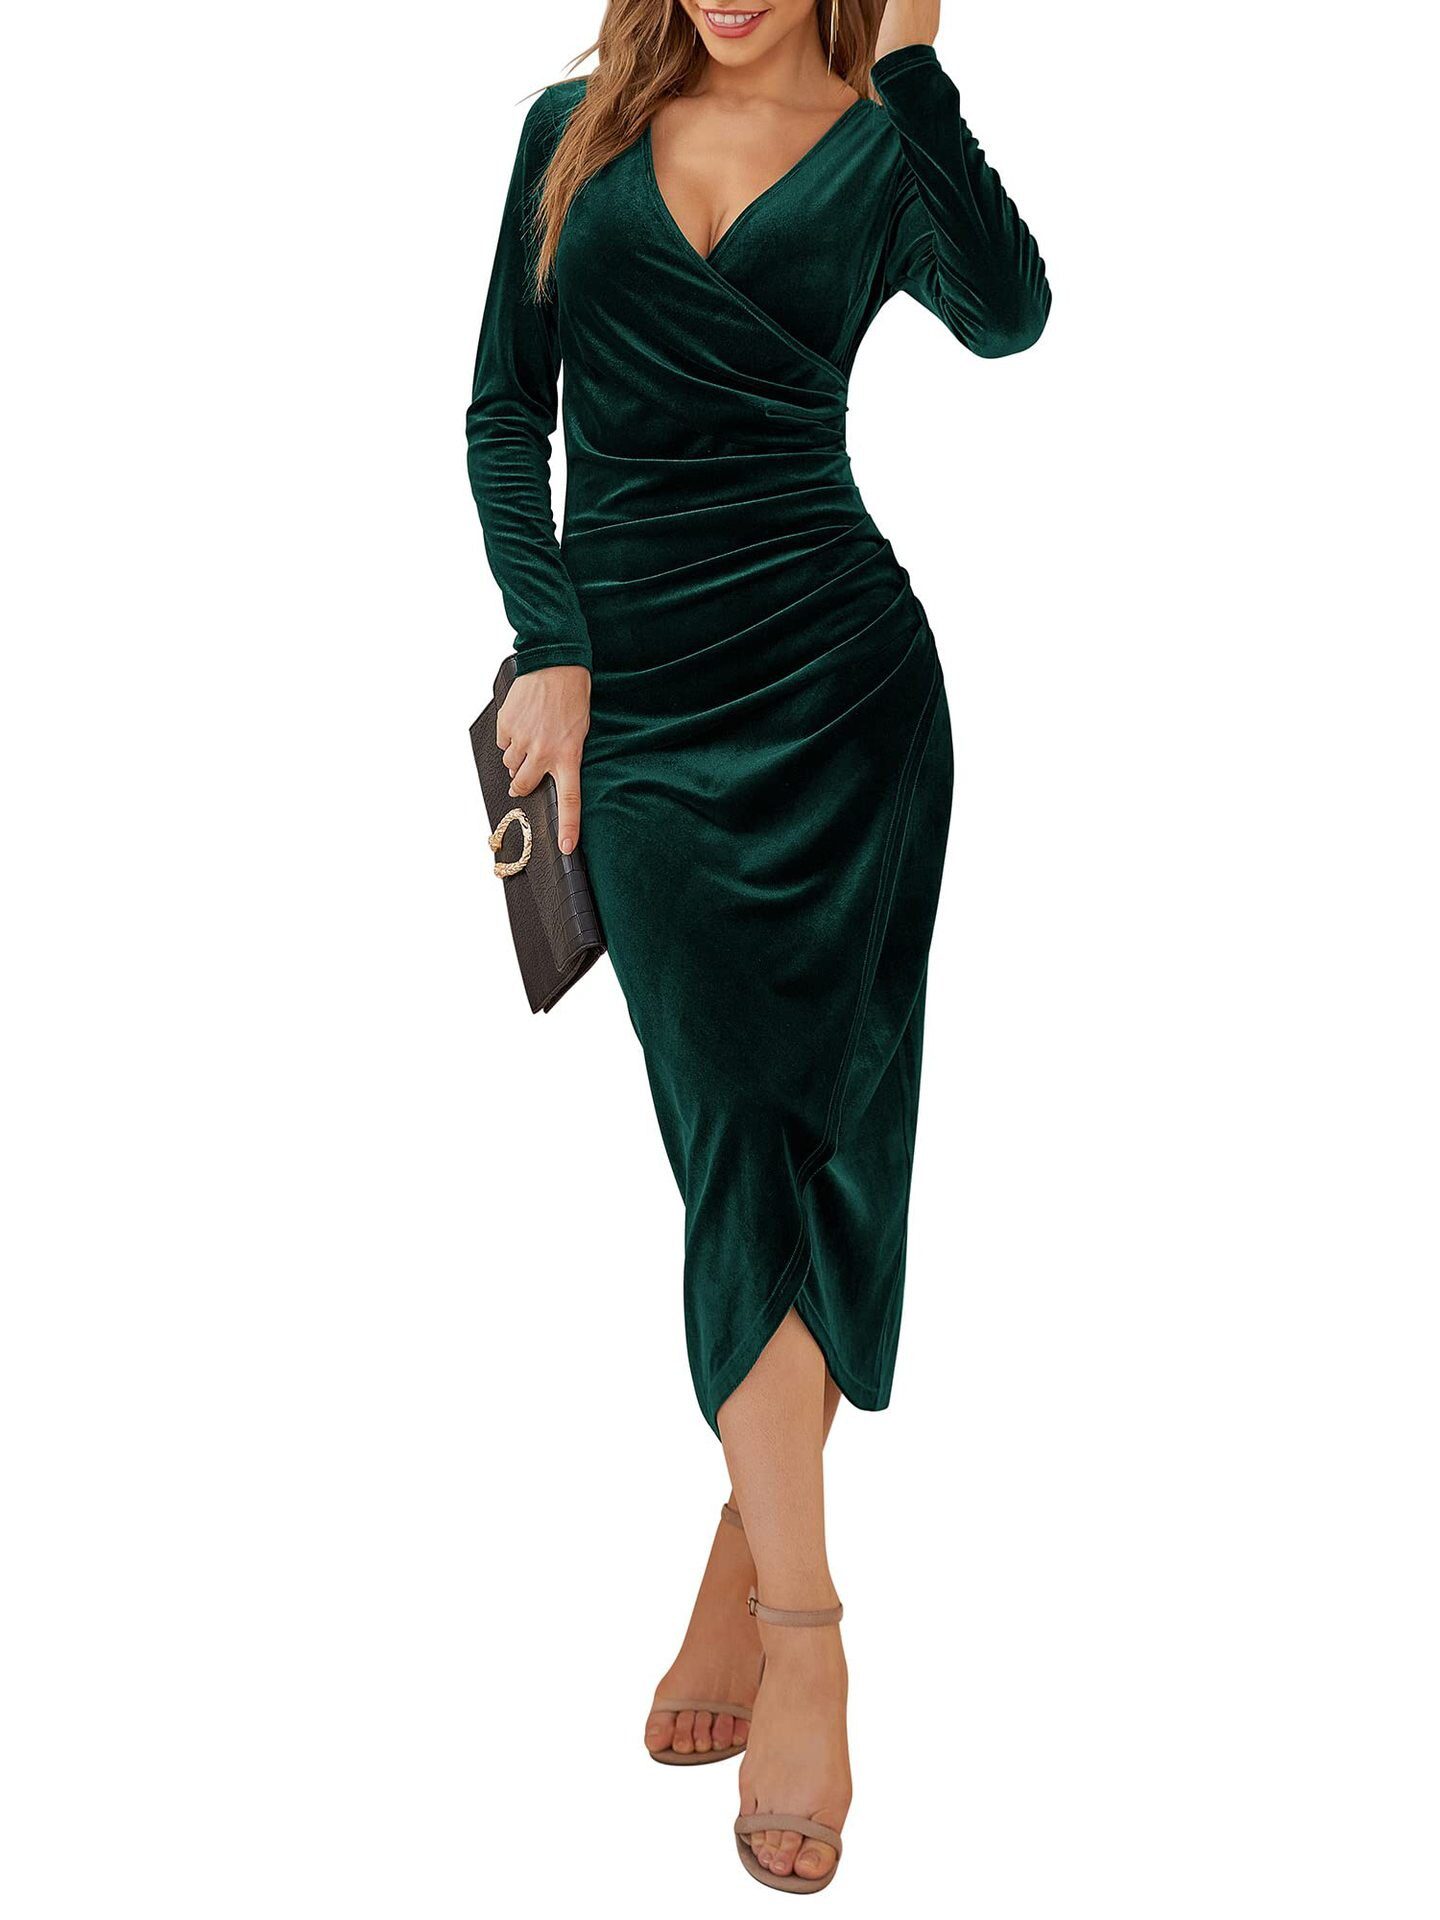 Elegant Long Sleeve Ruched Velvet Bodycon Midi Dress in Dresses